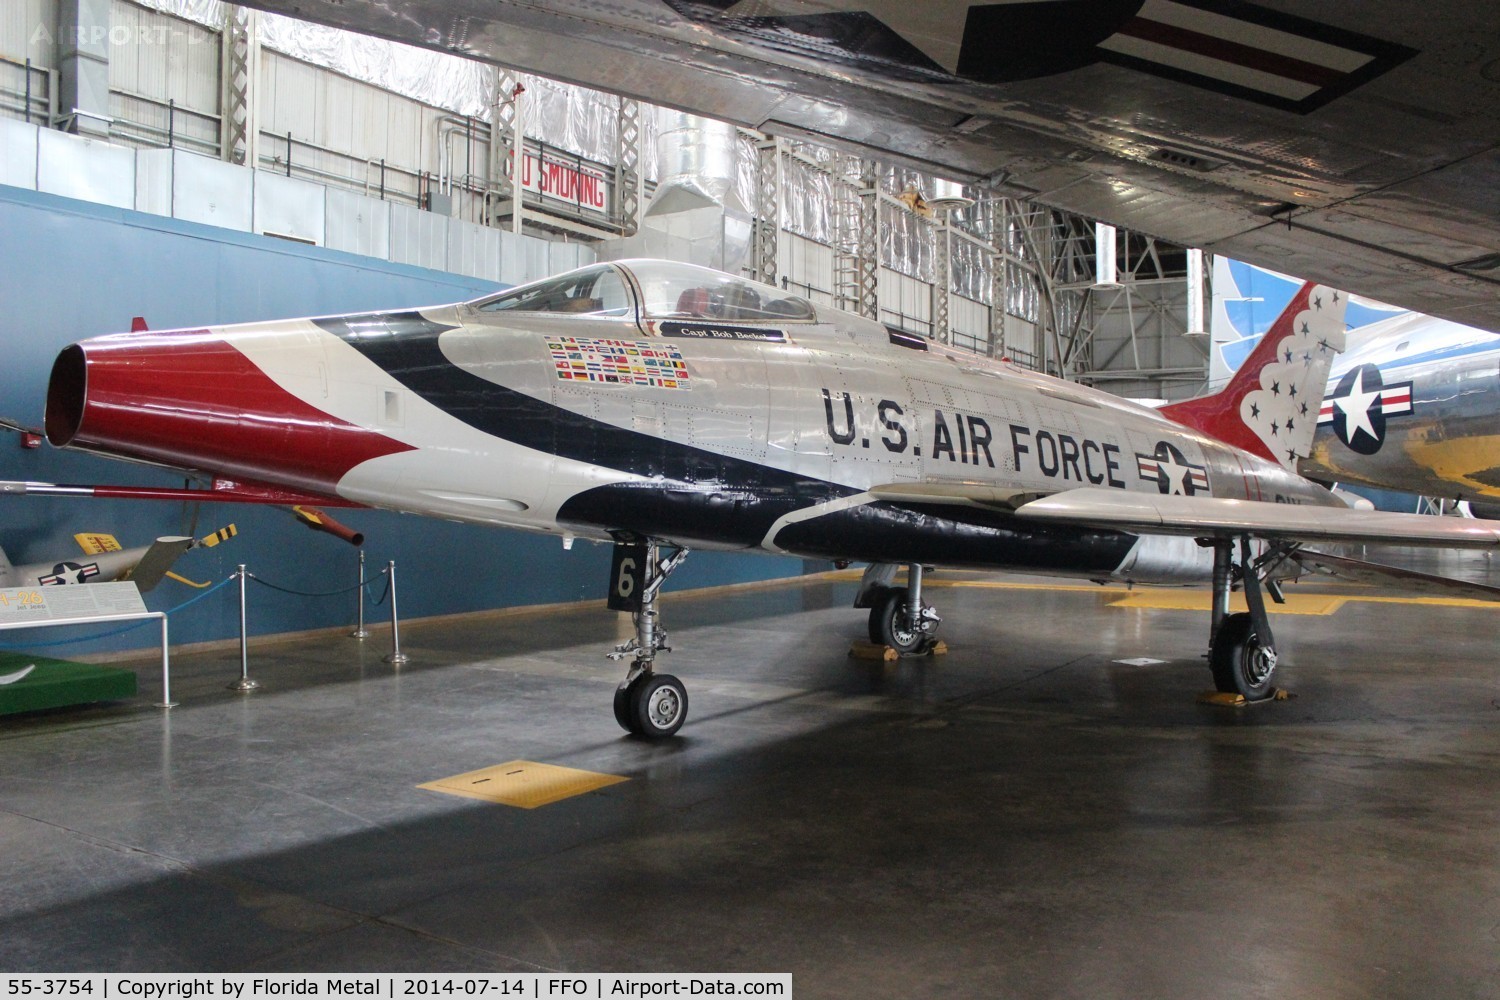 55-3754, 1956 North American F-100D Super Sabre C/N 223-436, Thunderbirds F-100